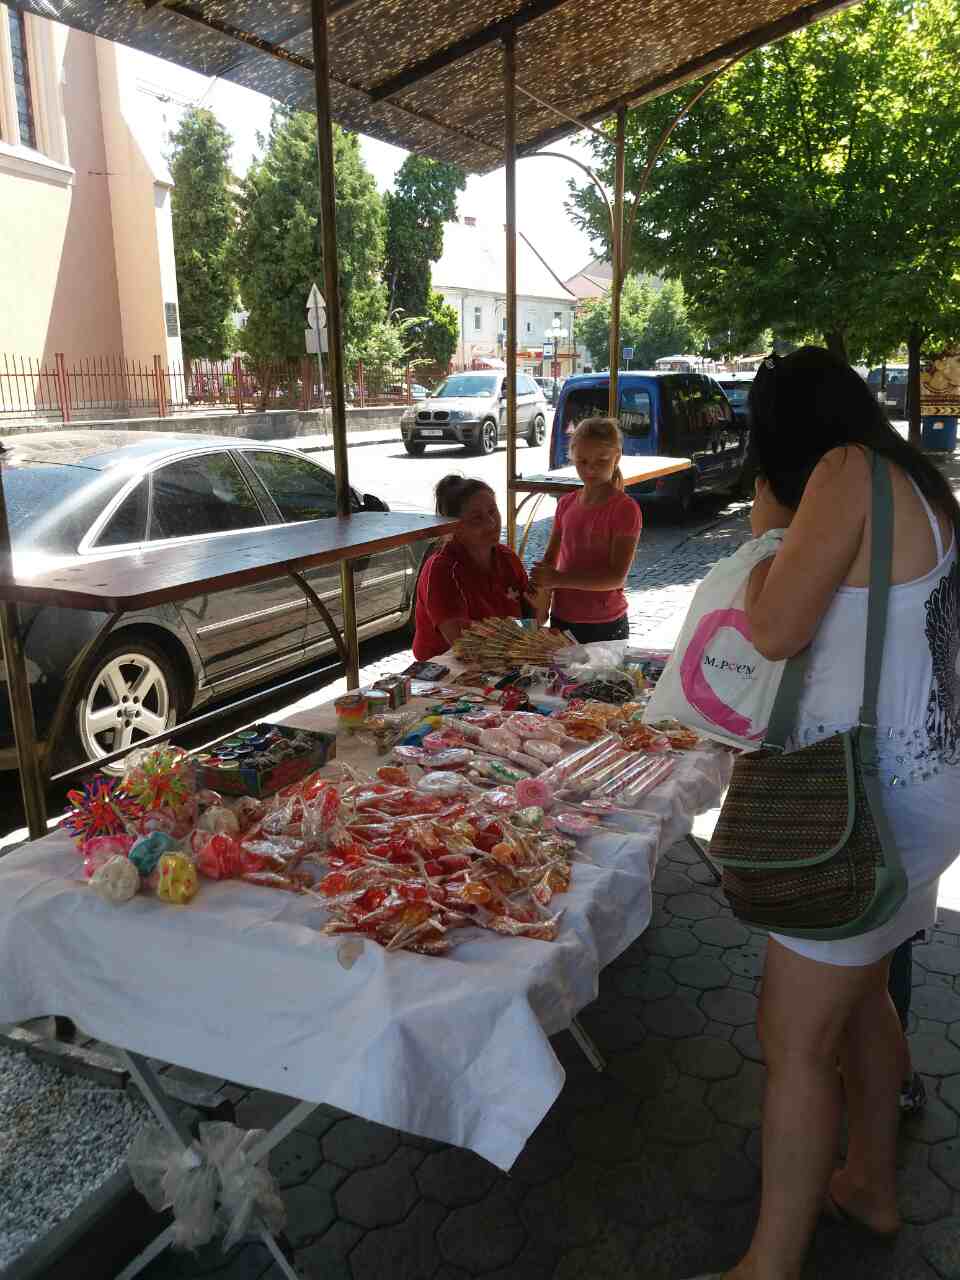 Працівники «Муніципальної міліції» склали протокол на мешканку села Великий Раковець Іршавського району, яка влаштувала незаконну торгівлю цукерками та китайськими іграшками на тротуарі, на площі Миру